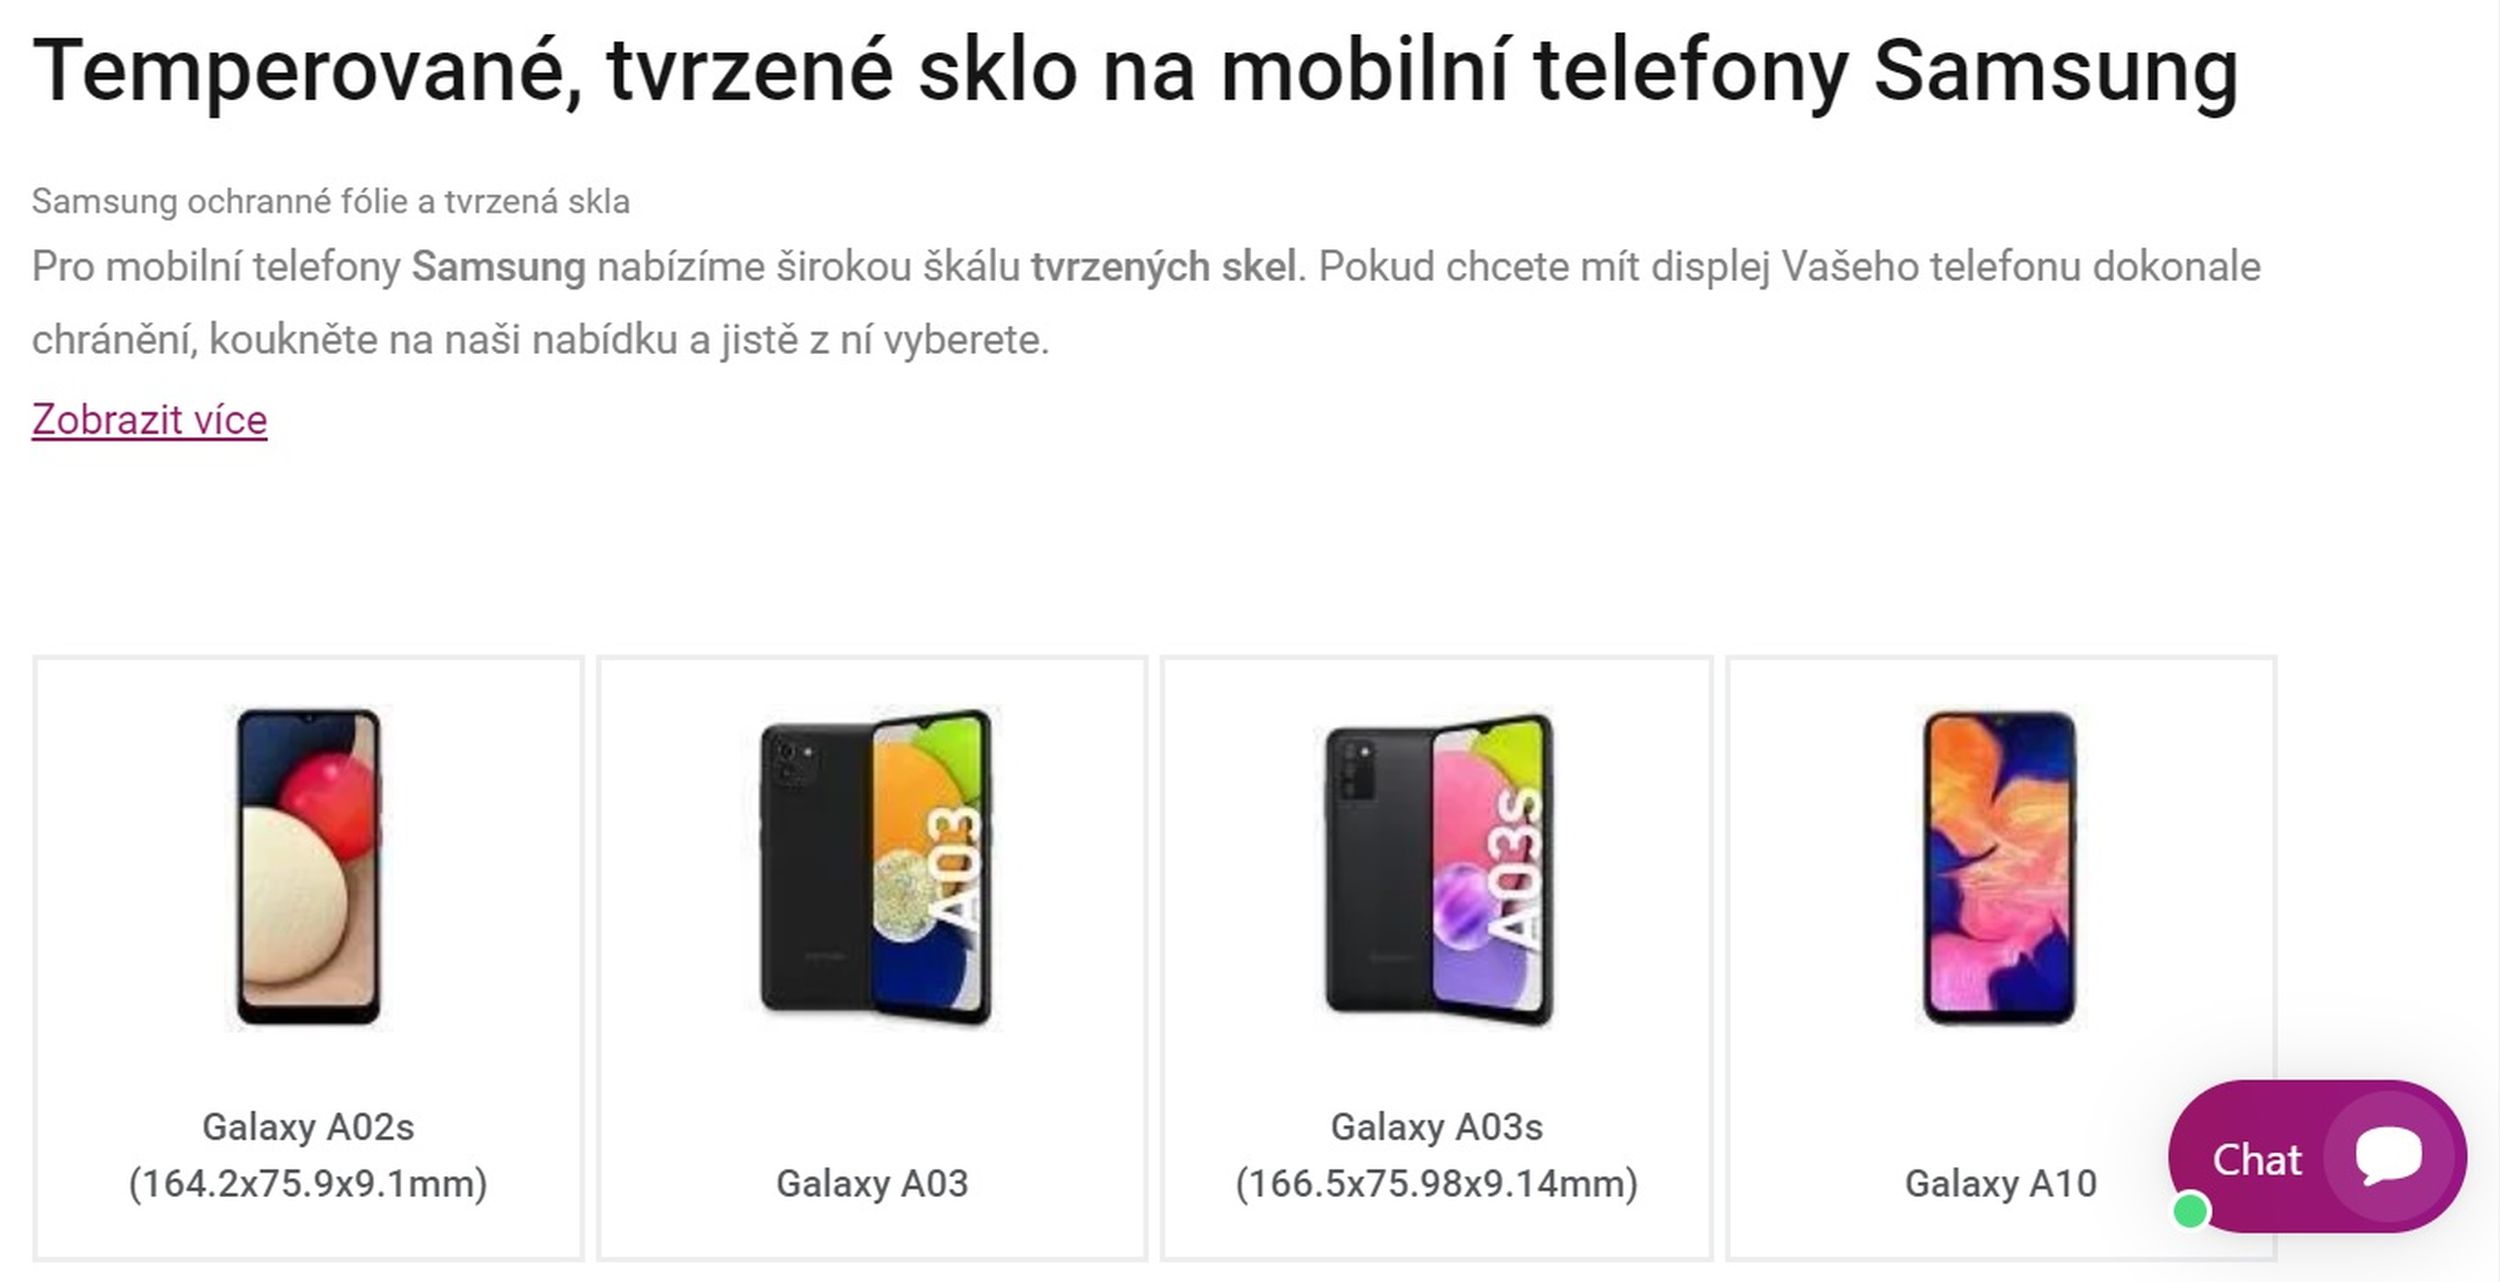 Ukázka sekce tvrzené sklo na mobilní telefony Samsung na mpouzdra.cz